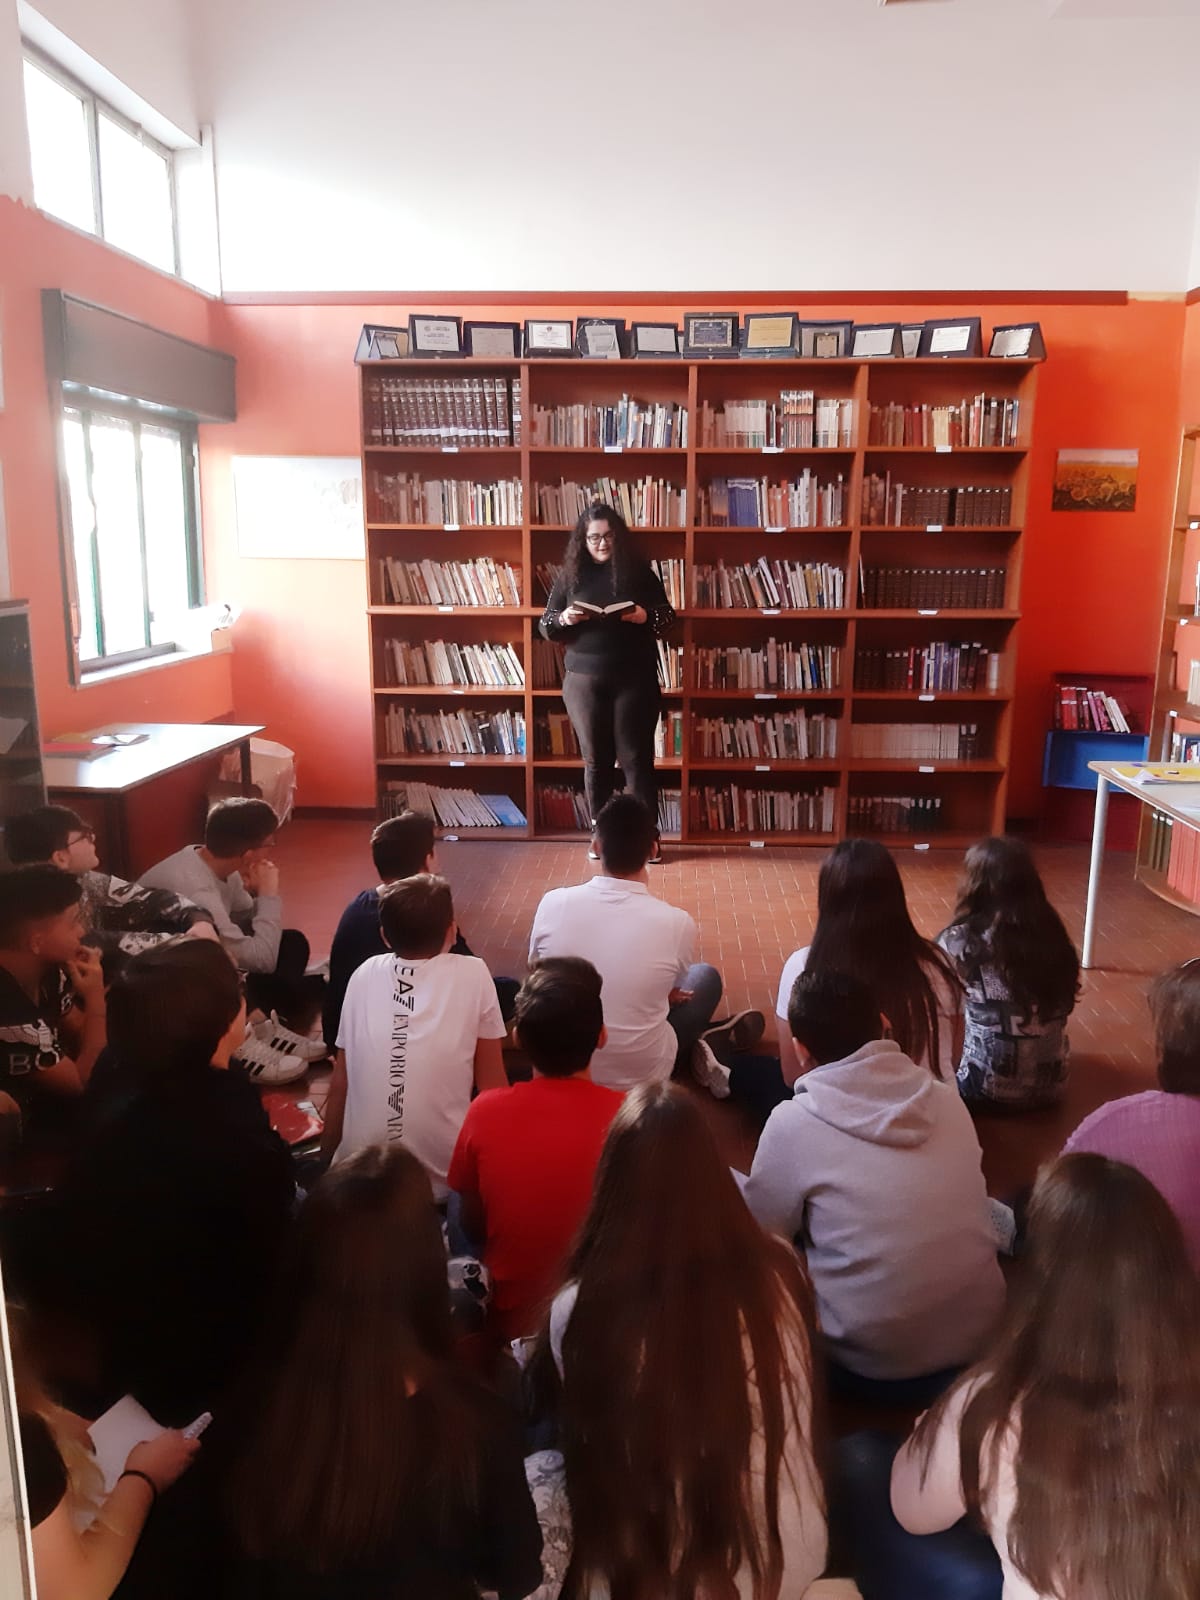 La scuola Rita Levi Montalcini di Afragola vince il premio nazionale della lettura “Istituti scolastici”